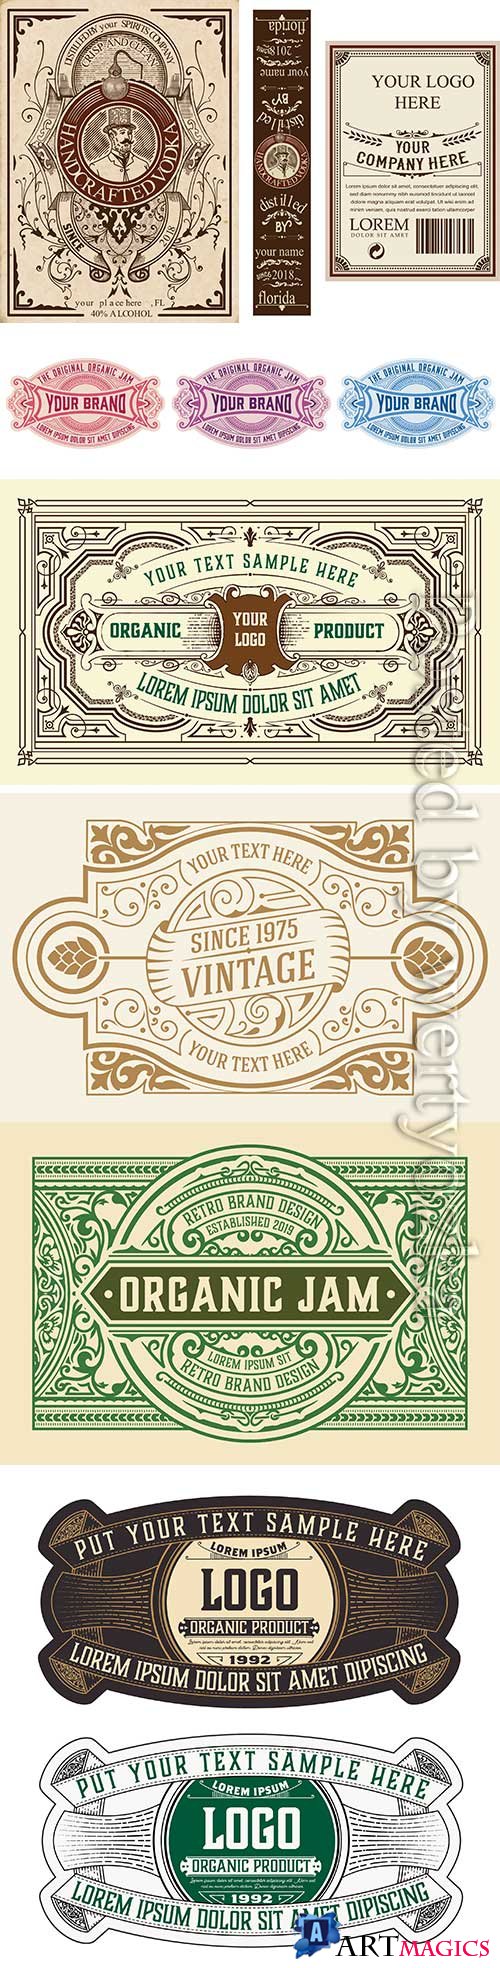 Vintage vector labels, cards, frame # 2